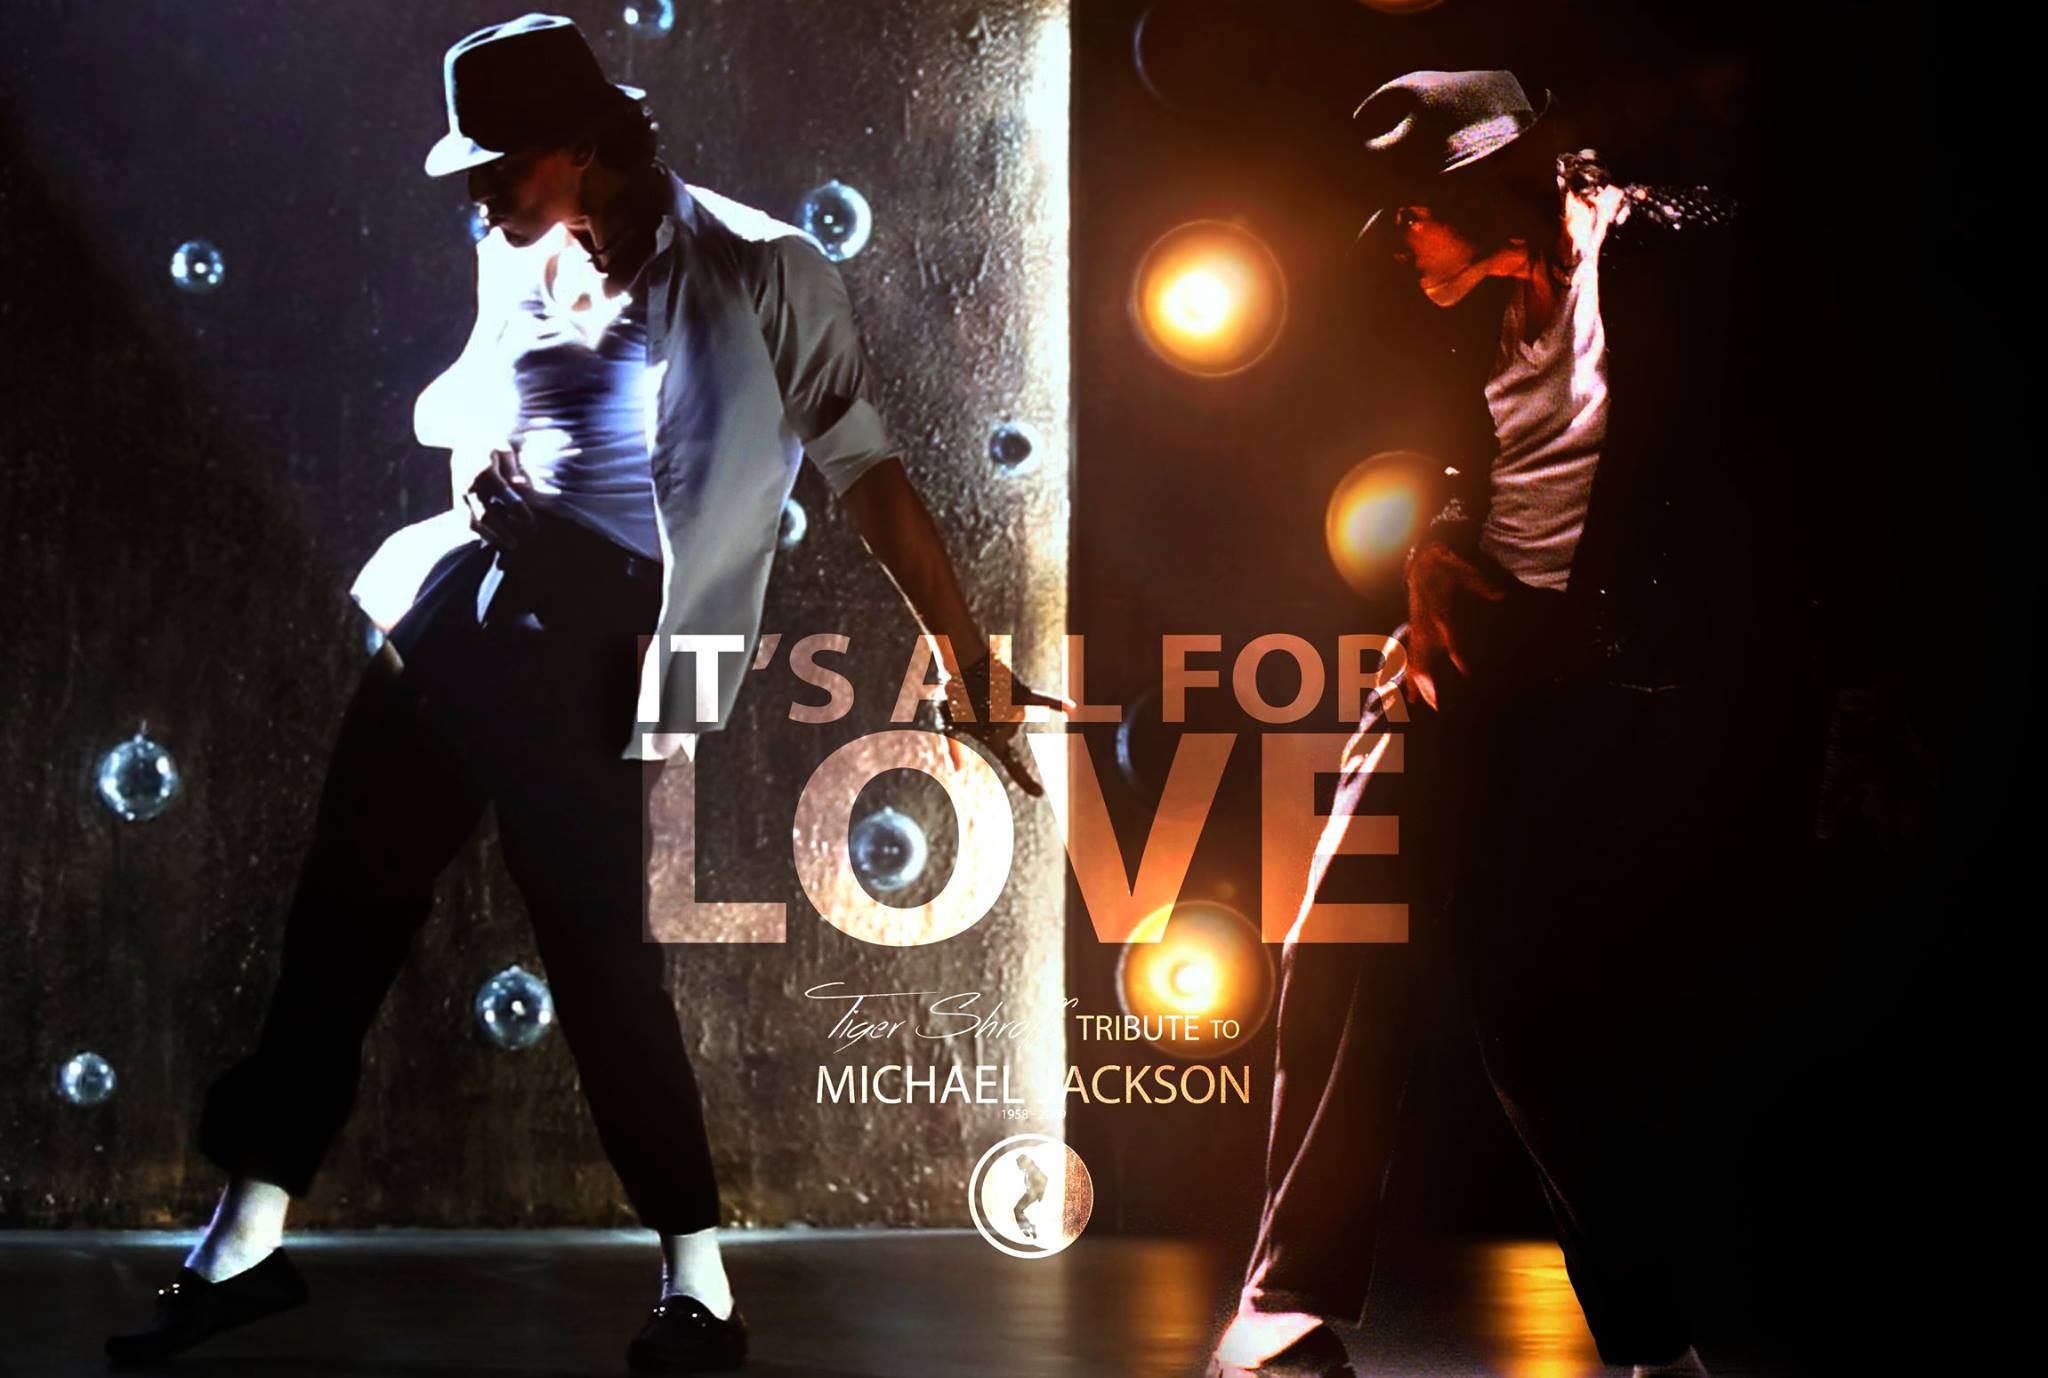 Tiger Shroffs Tribute to Michael Jackson